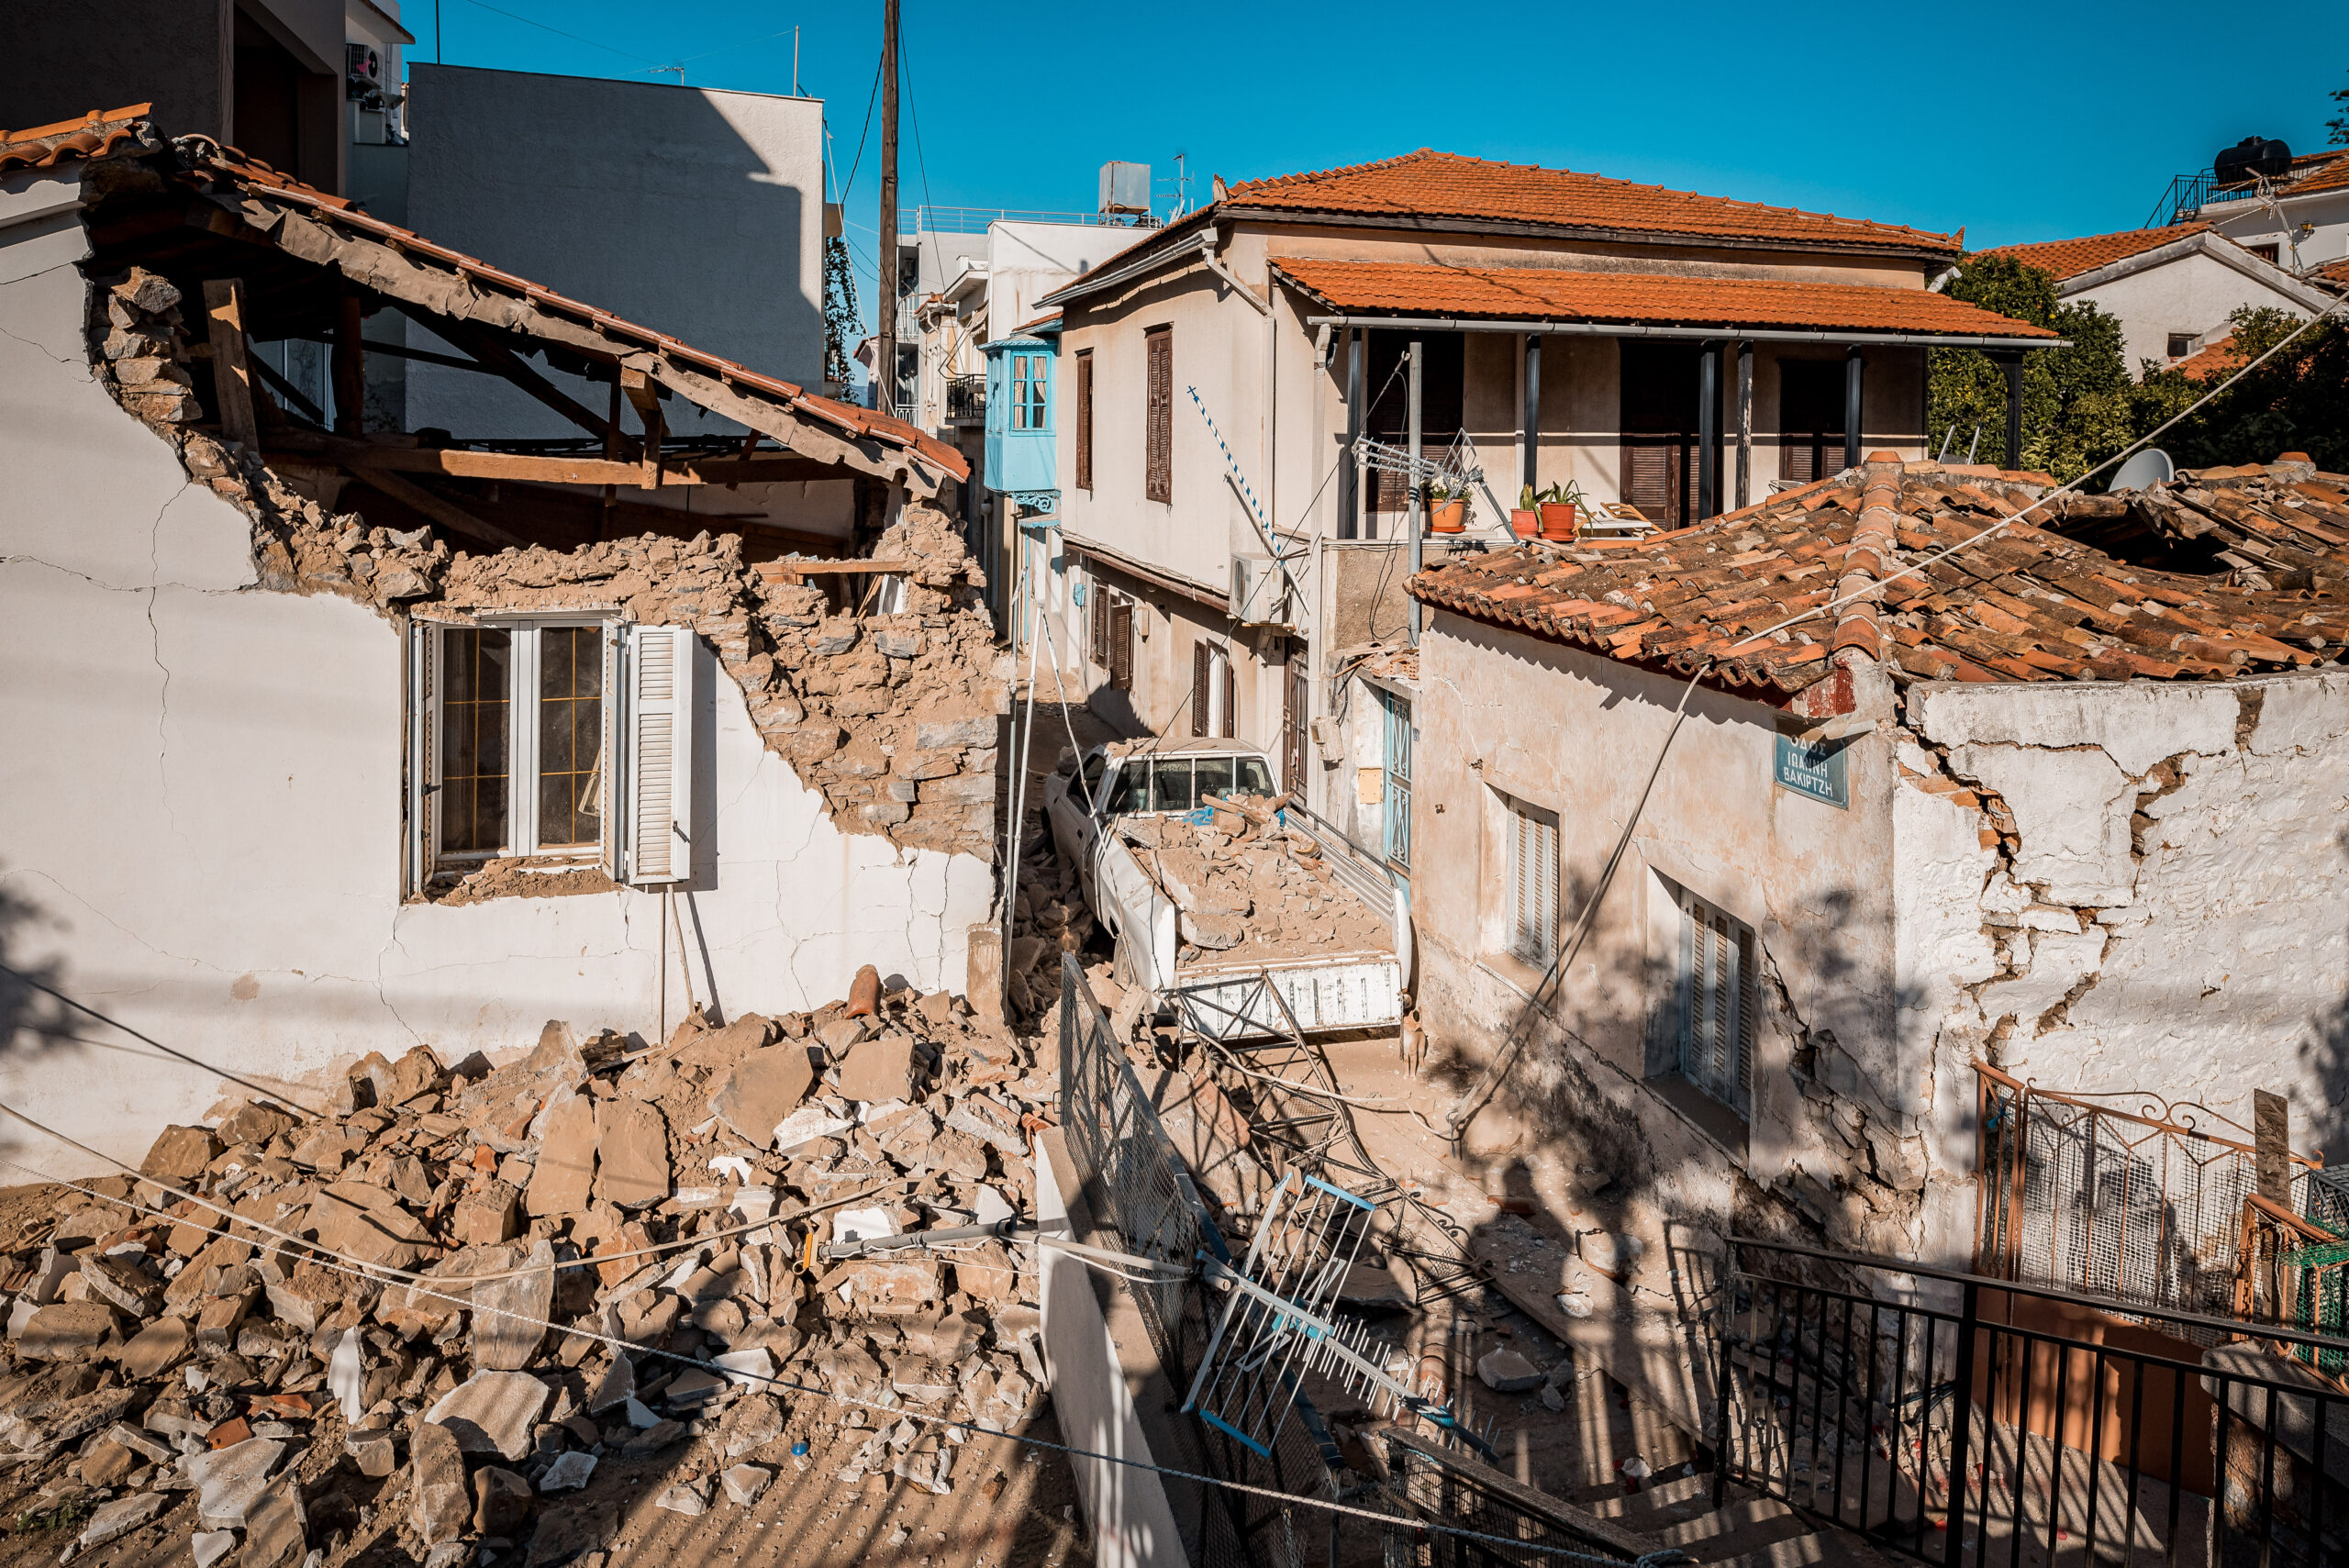 Η επόμενη μέρα του ισχυρού σεισμού των 6,7 ρίχτερ στην Σάμο.Εικόνες από τις καταστροφές που έχουν υποαστεί σπίτια και καταστήματα στο Βαθύ, Σάββατο 31 Οκτωβρίου 2020 (EUROKINISSI / ΜΑΝΩΛΗΣ ΘΡΑΒΑΛΟΣ)